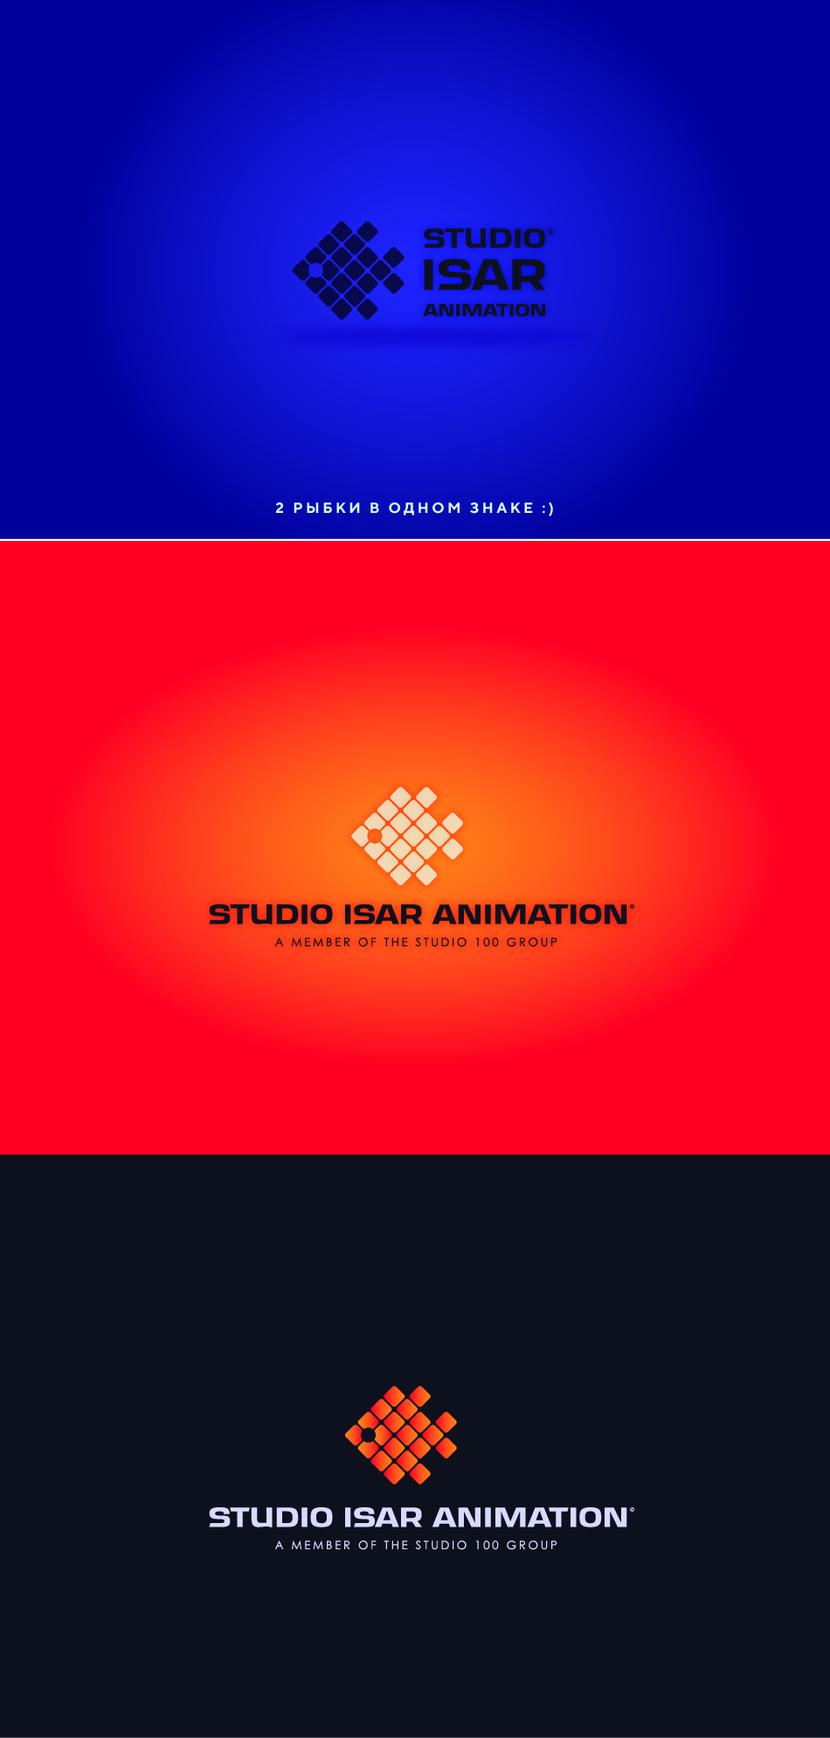 #2 - Логотип и фирменный стиль для студии мультипликации Studio Isar Animation